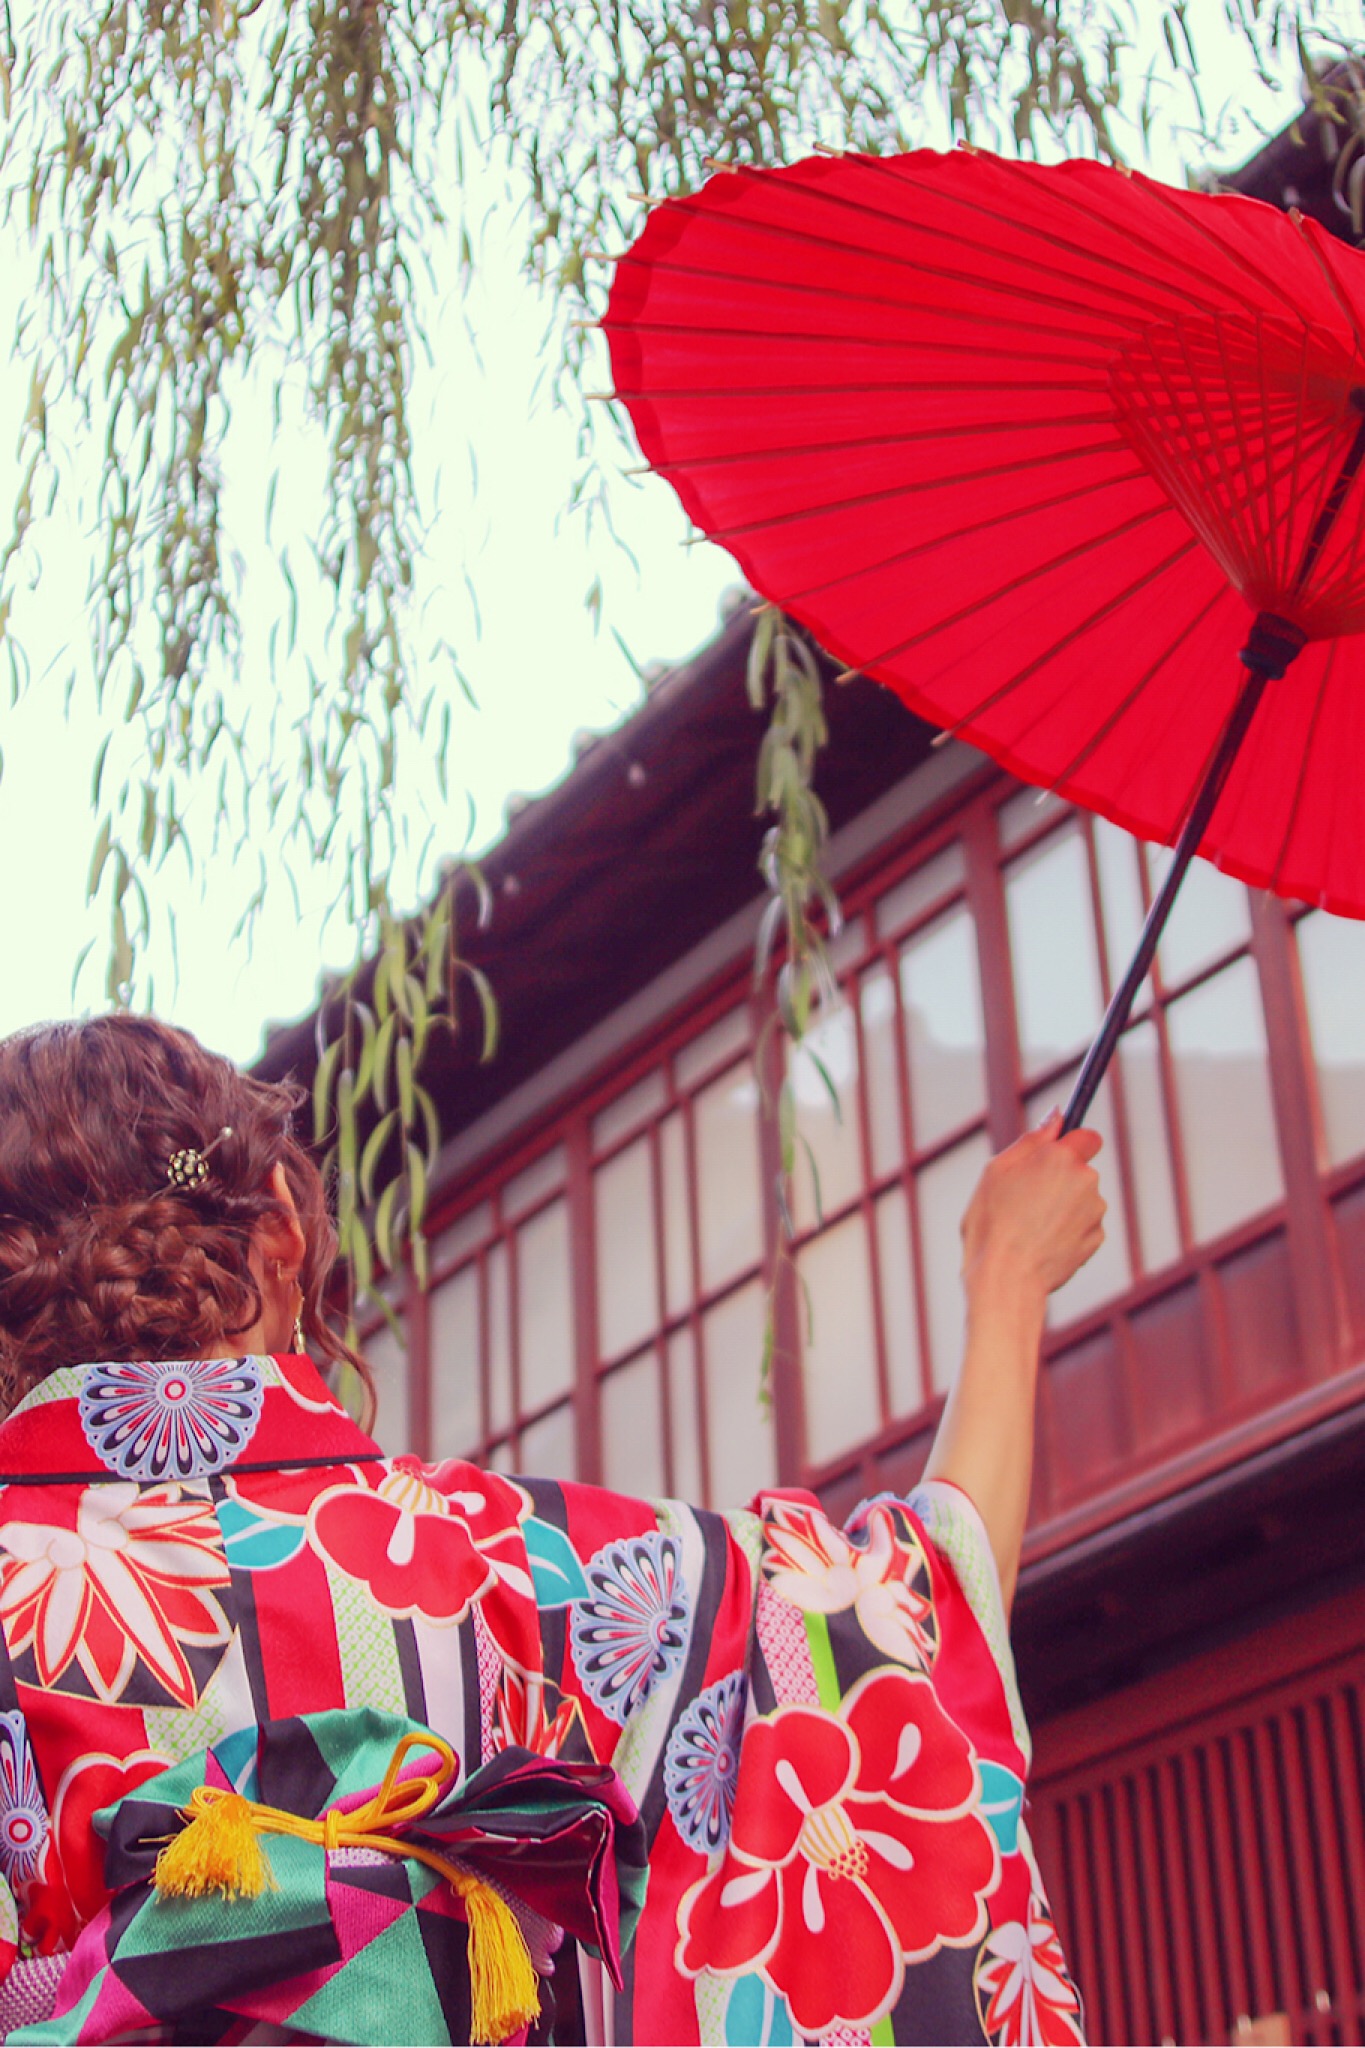 柳の木の下で赤い和傘を掲げる赤い着物の女の子のフリー画像 おしゃれなフリー写真素材 Girly Drop